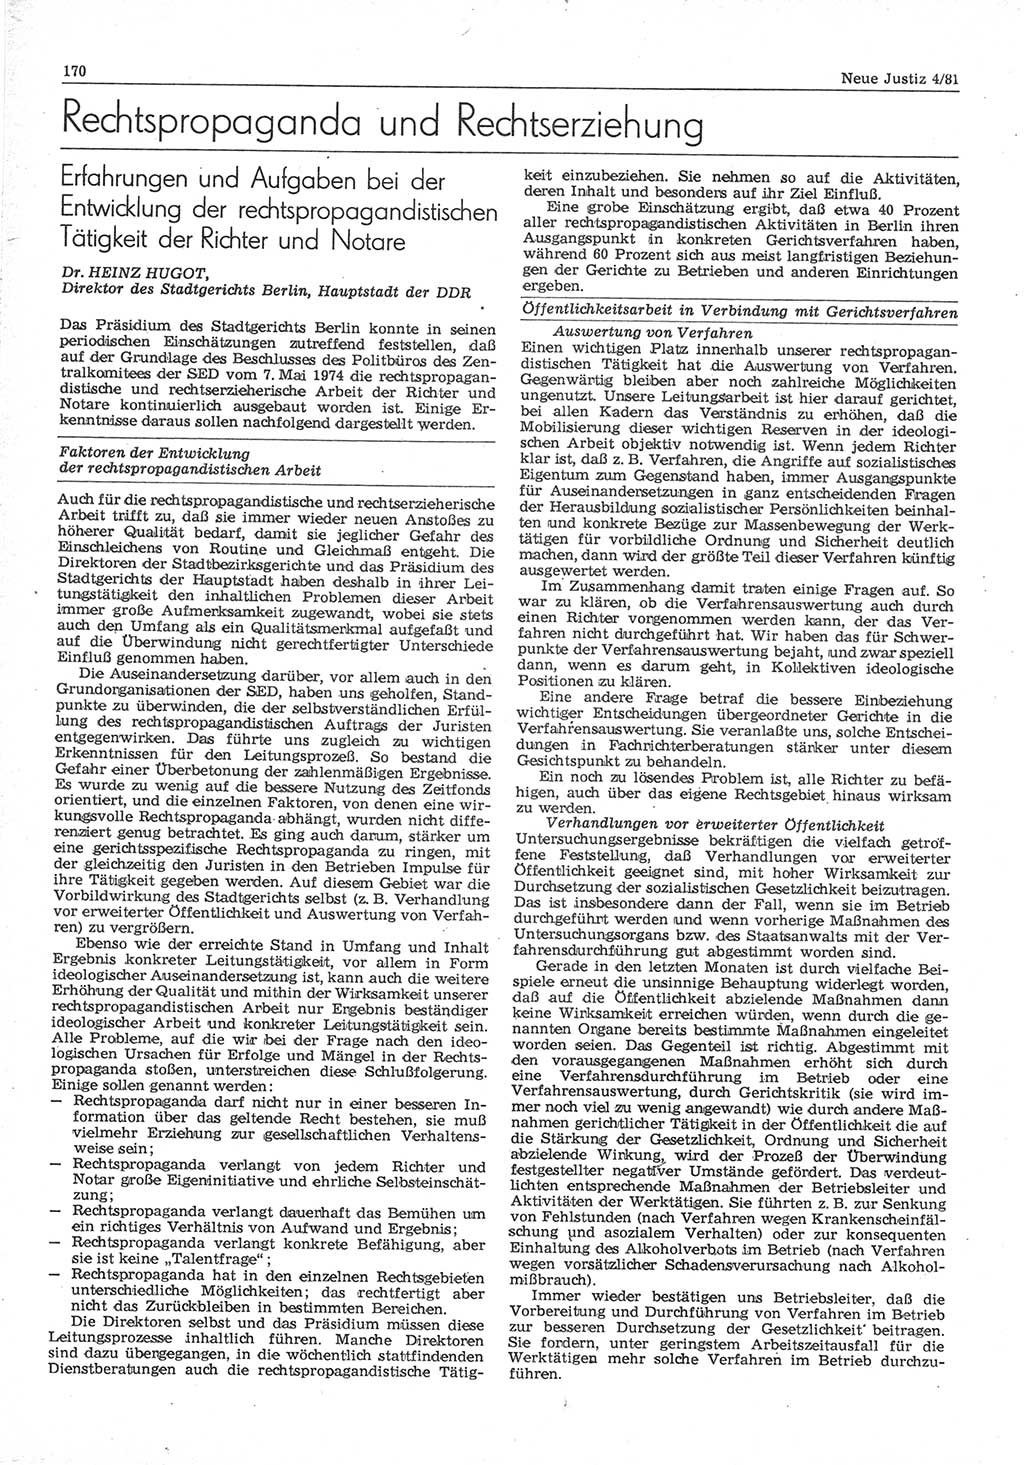 Neue Justiz (NJ), Zeitschrift für sozialistisches Recht und Gesetzlichkeit [Deutsche Demokratische Republik (DDR)], 35. Jahrgang 1981, Seite 170 (NJ DDR 1981, S. 170)